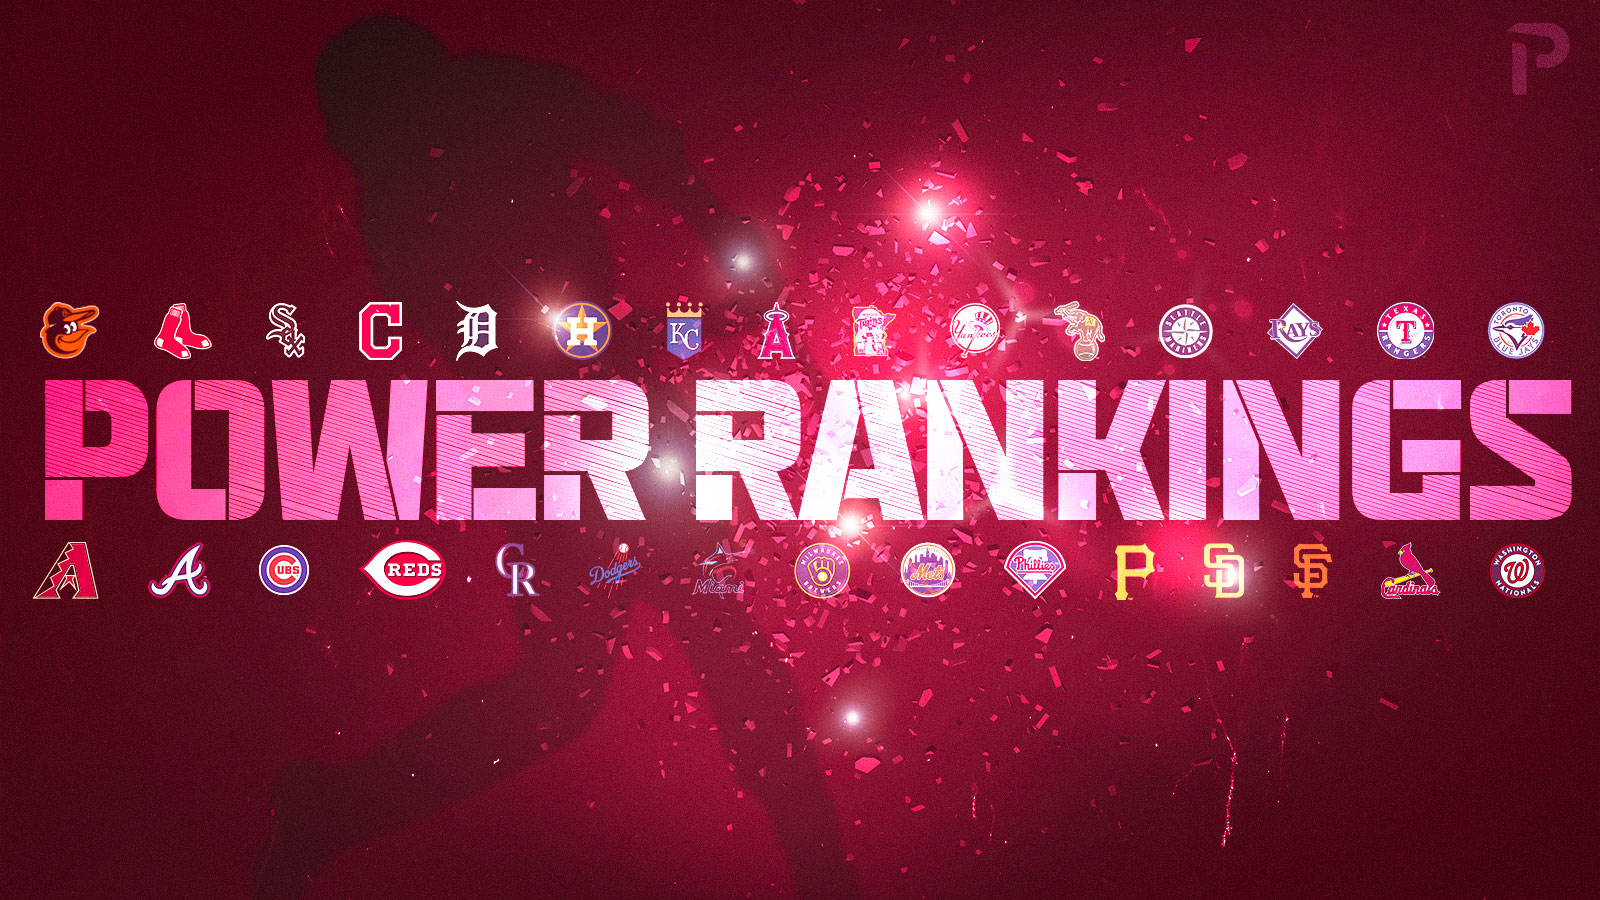 MLB Power Rankings 2022 for Week 20